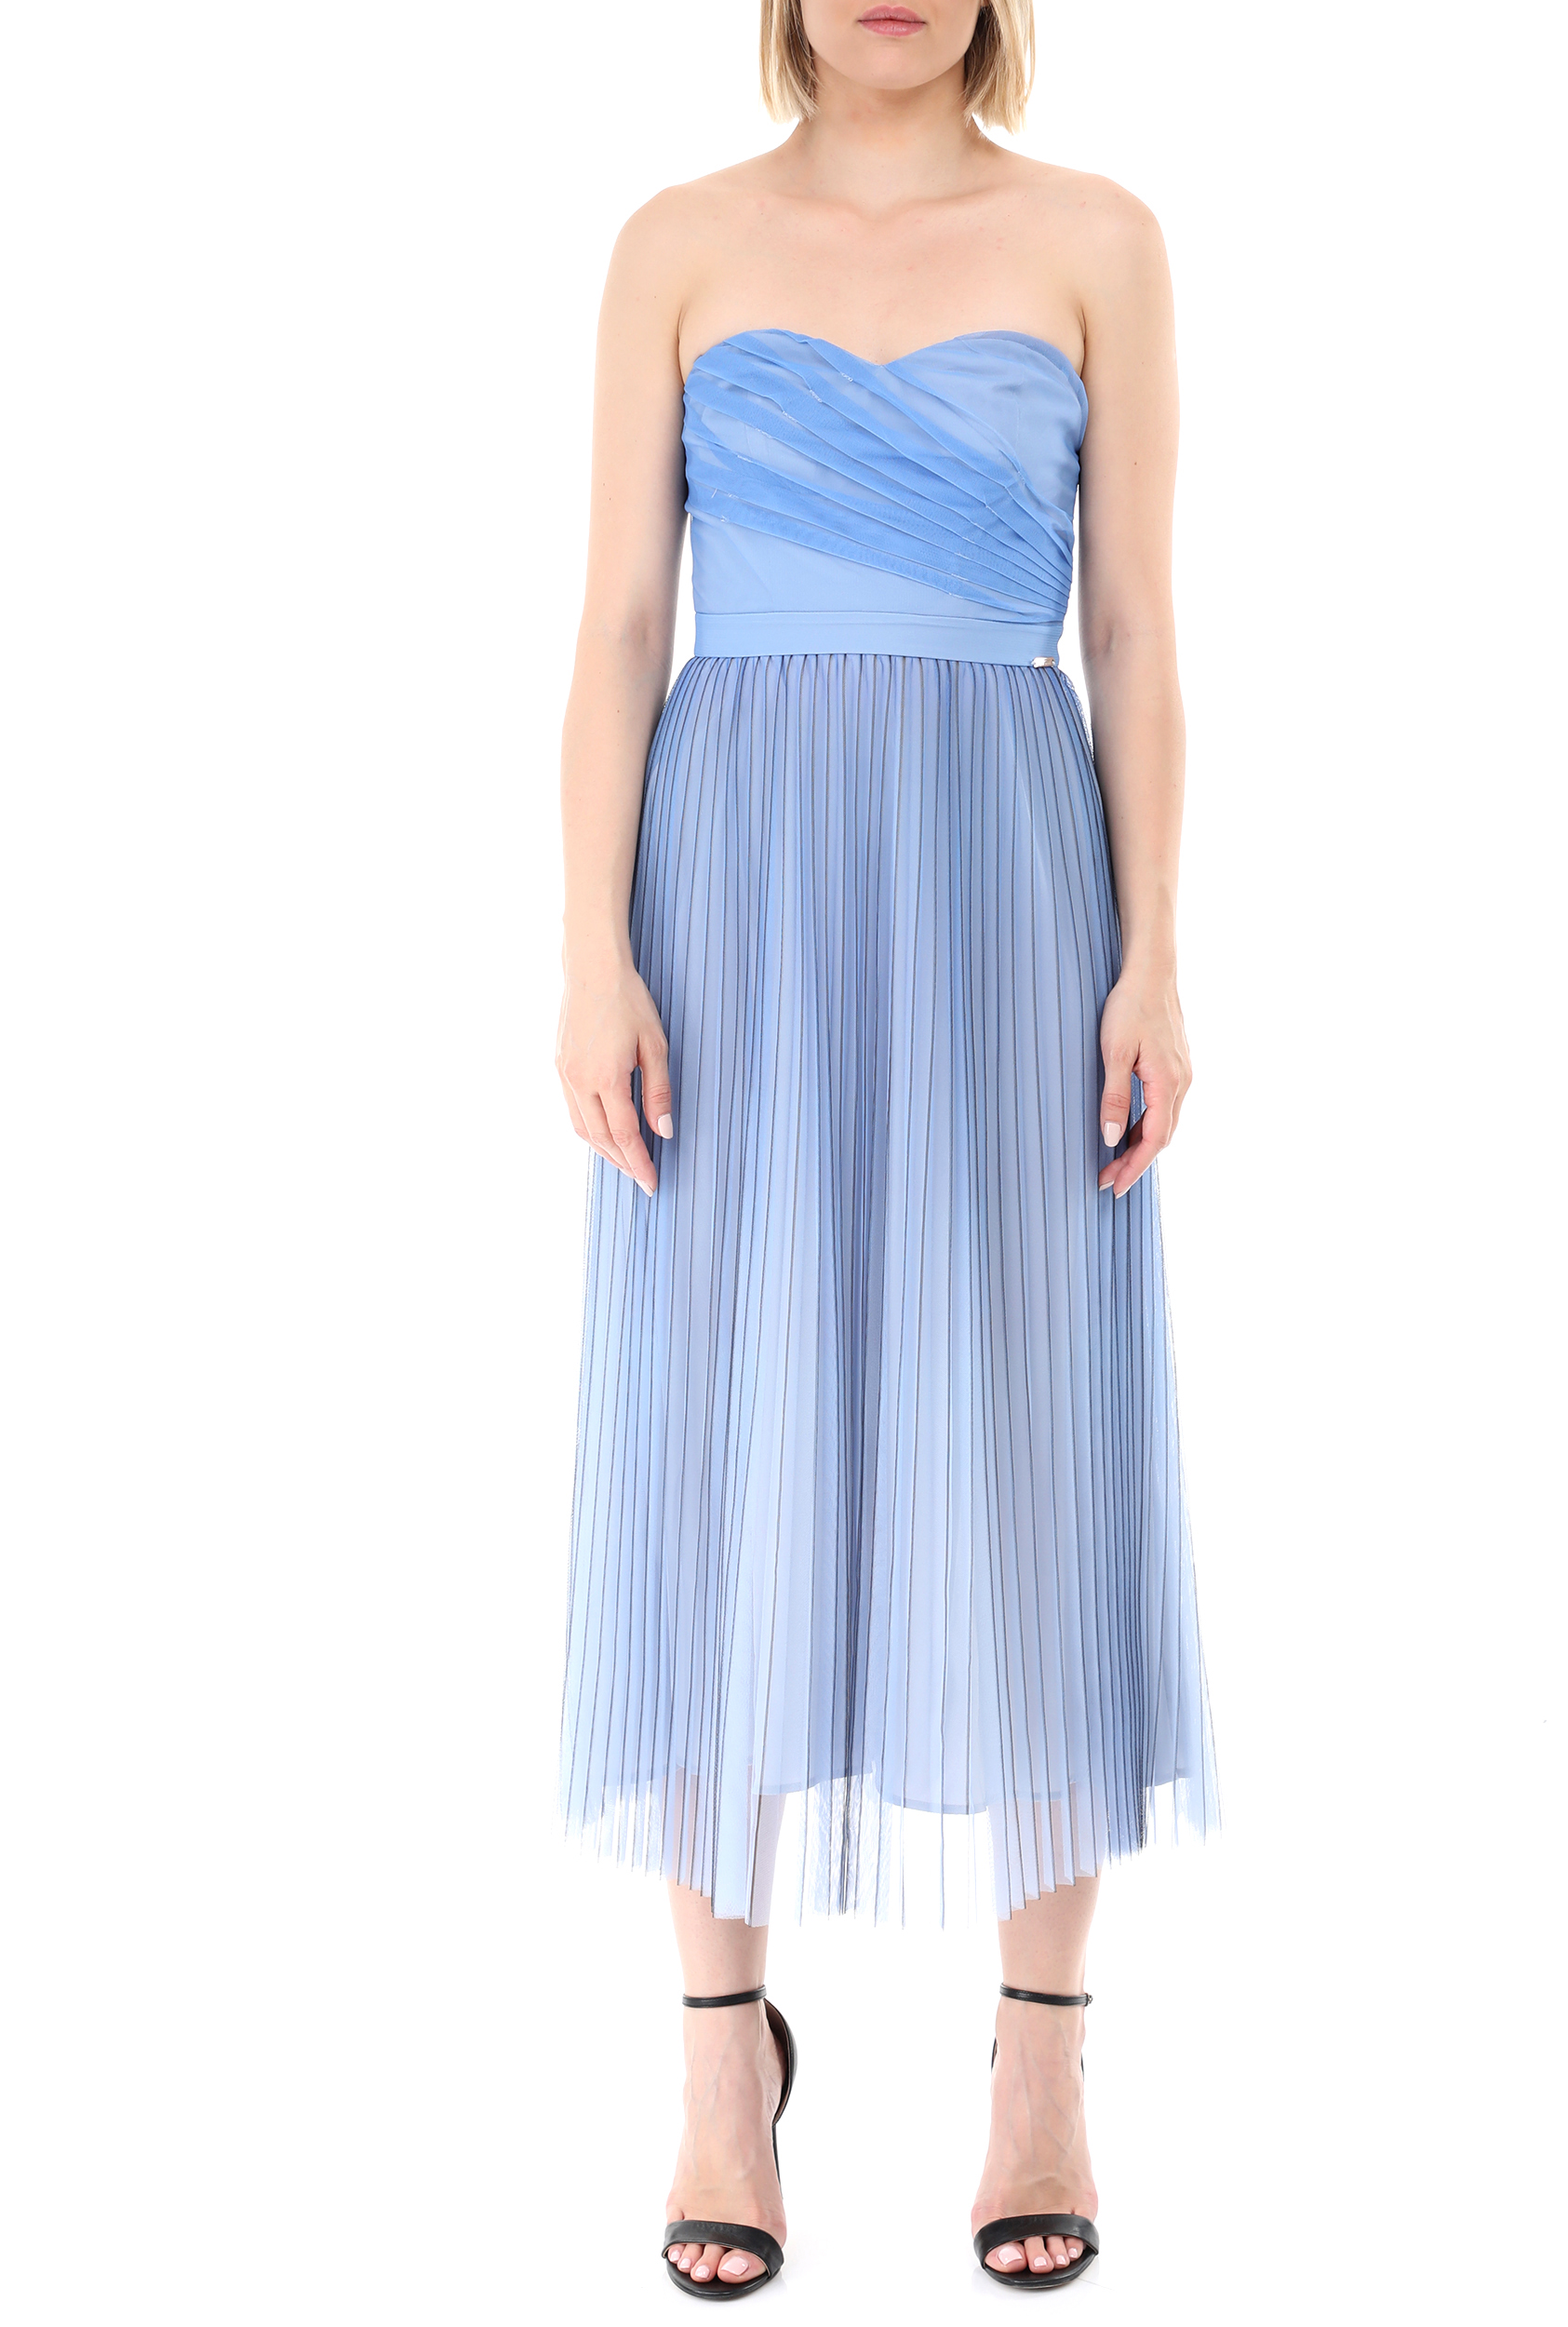 Γυναικεία/Ρούχα/Φορέματα/Μάξι GUESS - Γυναικείο μακρύ φόρεμα GUESS MONICA μπλε